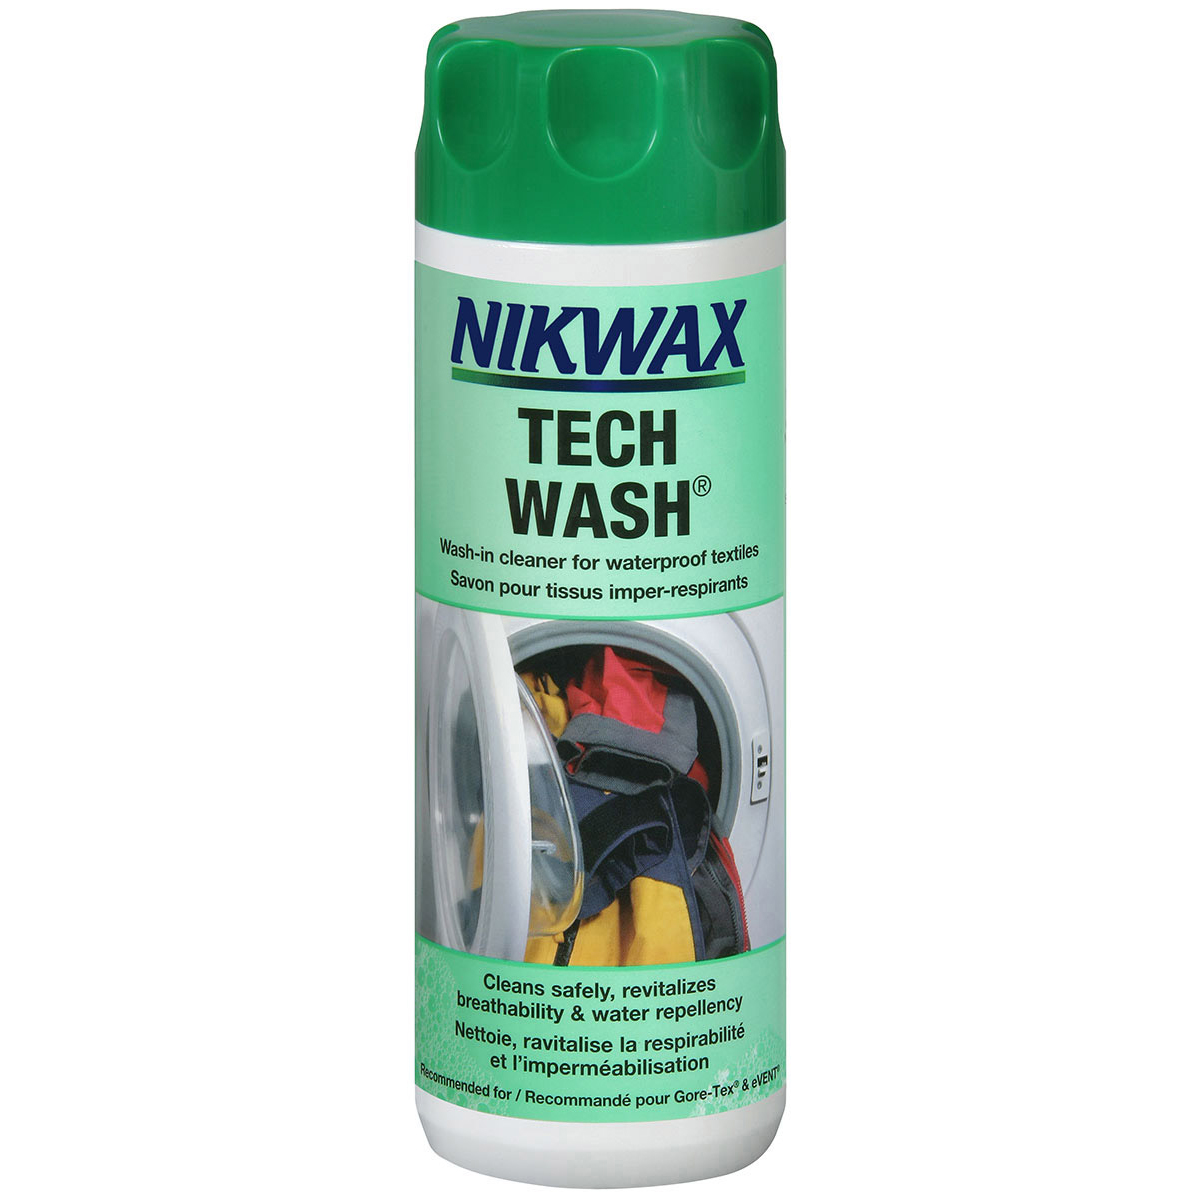 Nikwax Tech Wash Review